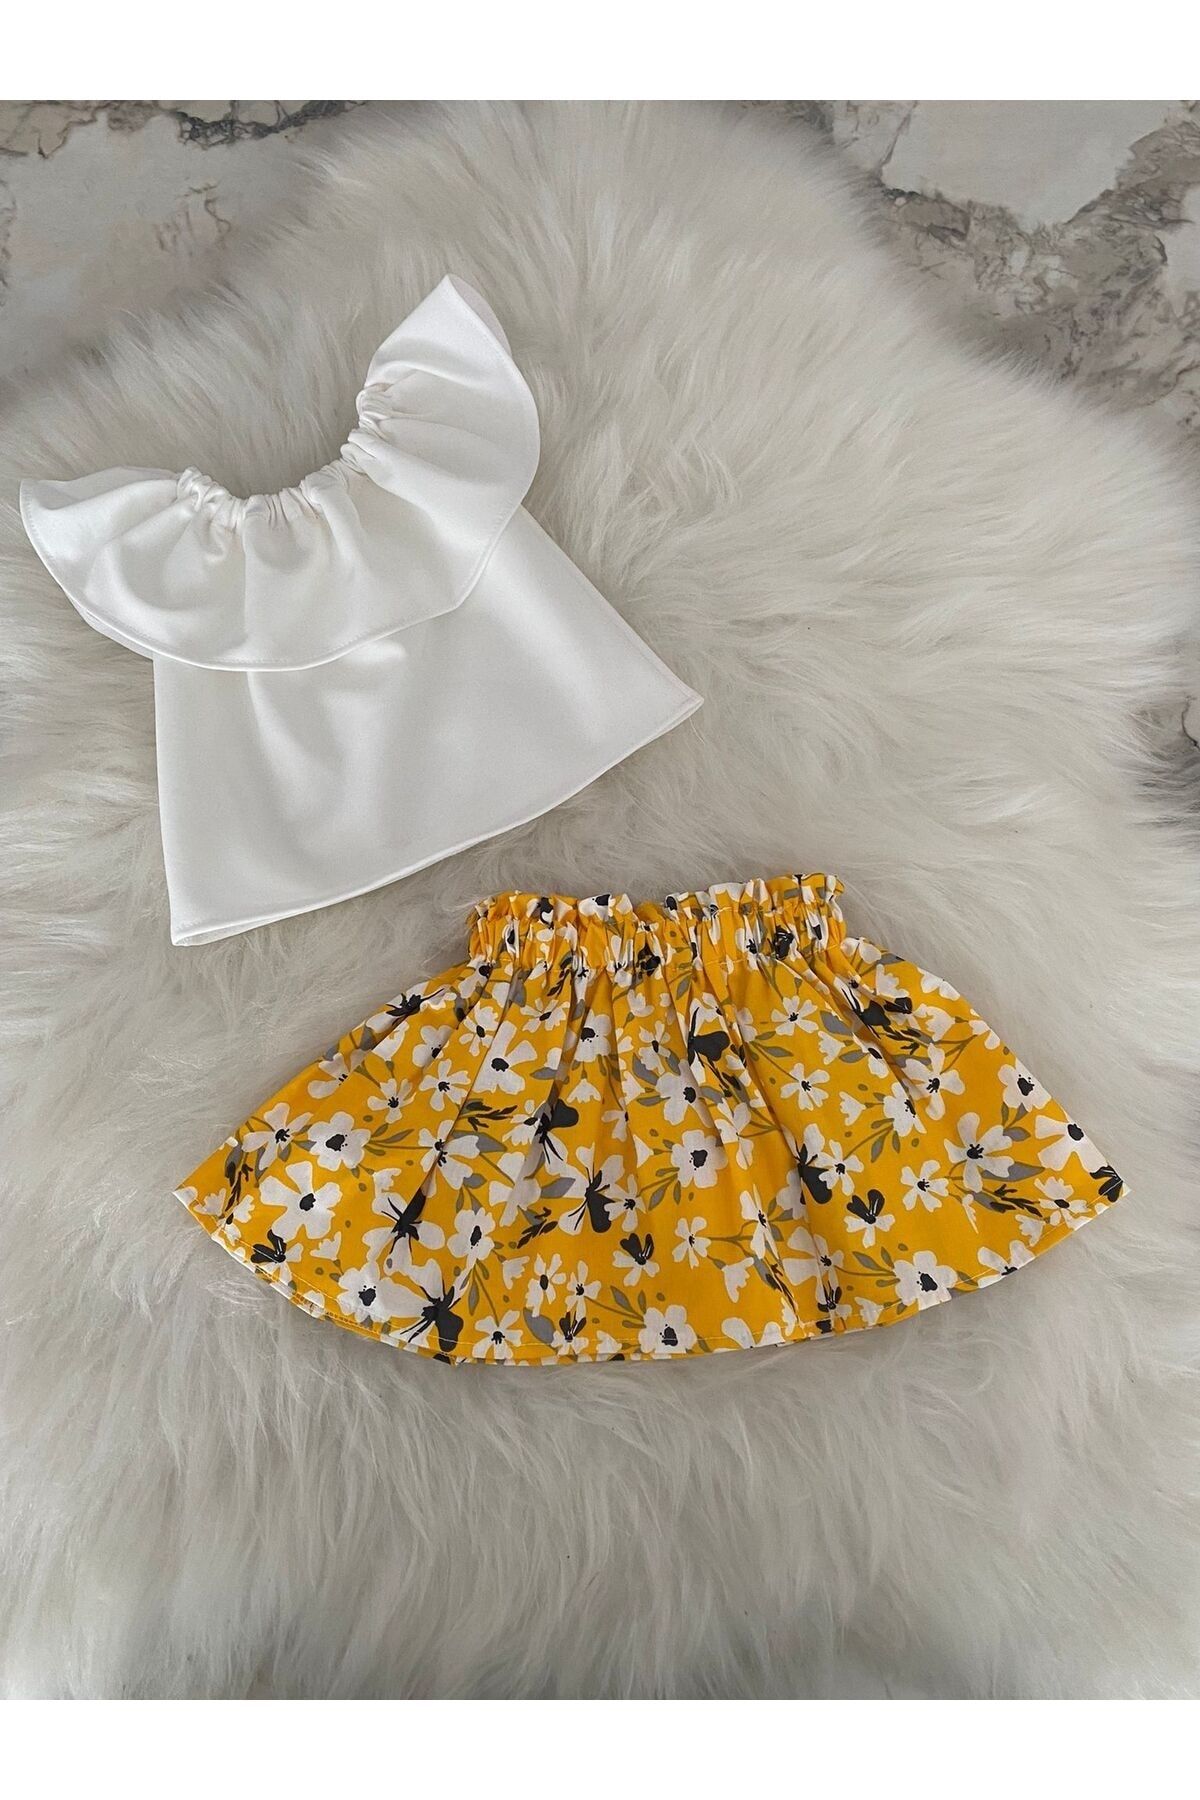 Moda Lina Kız Bebek Beyaz Bluz & Büyük Çiçek Desen Etek Takım